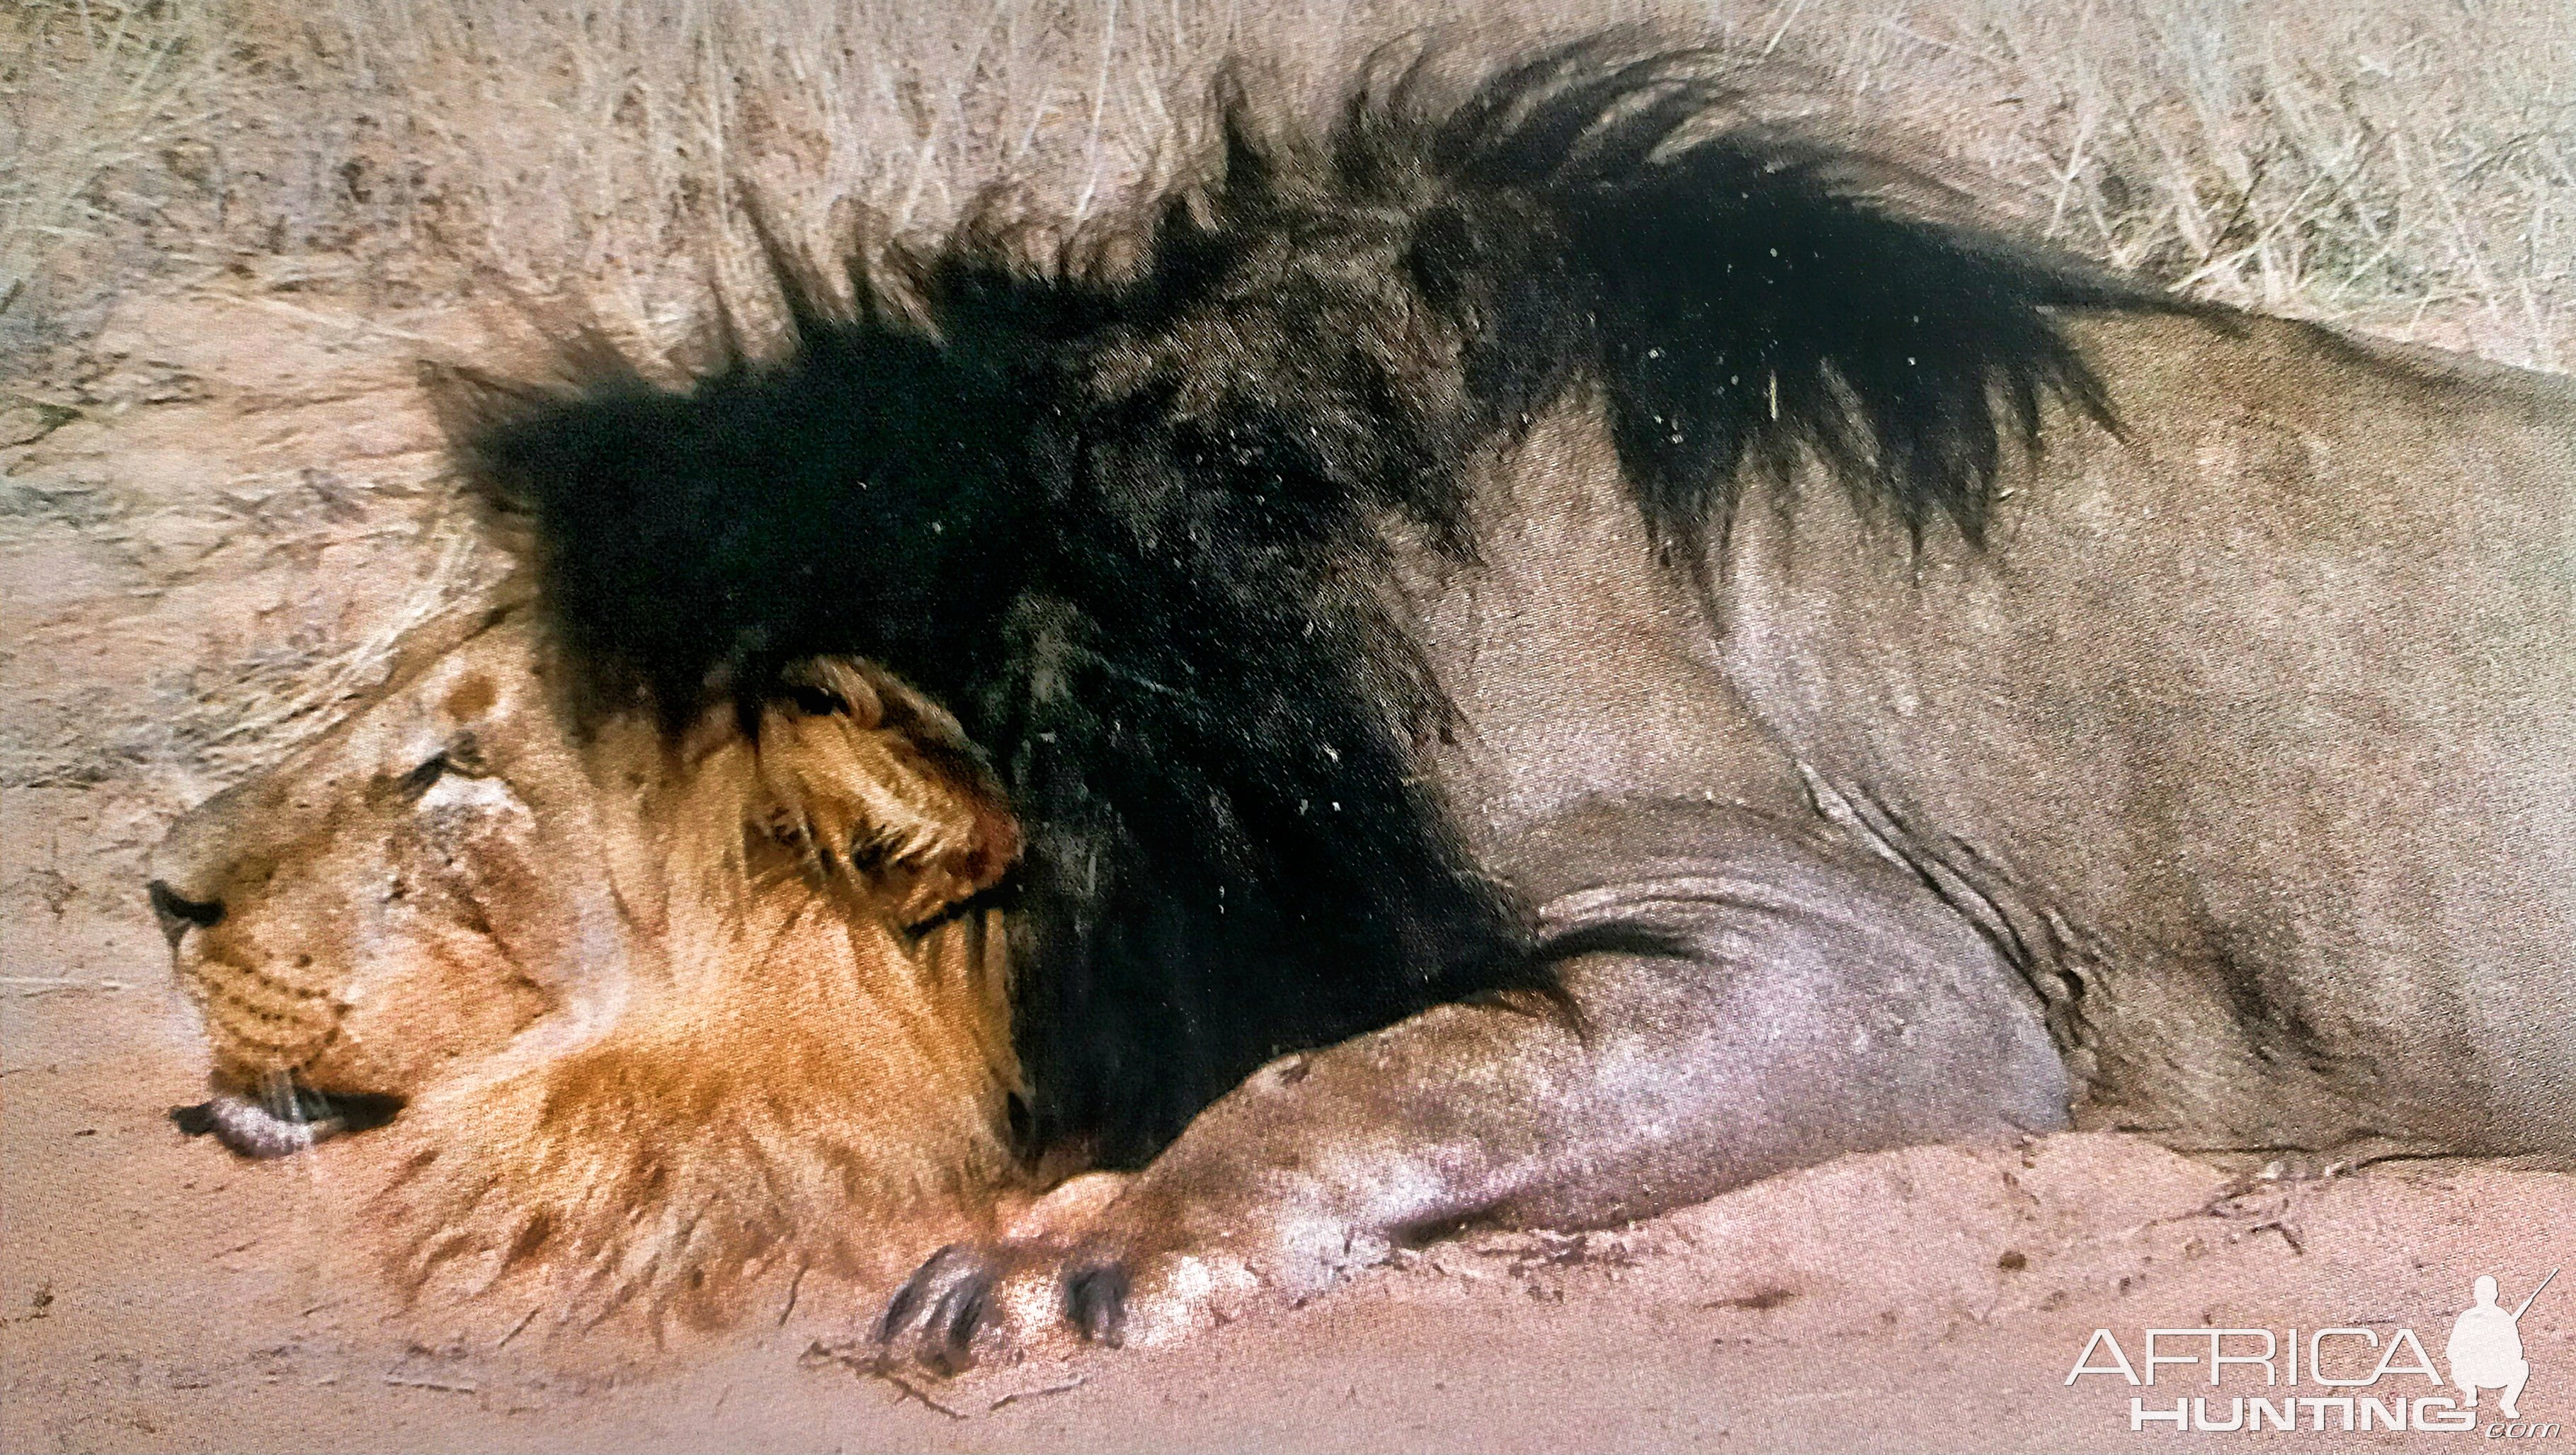 Black-maned lion shot by Steve Chancellor in 2006-Okavango Delta, Botswana